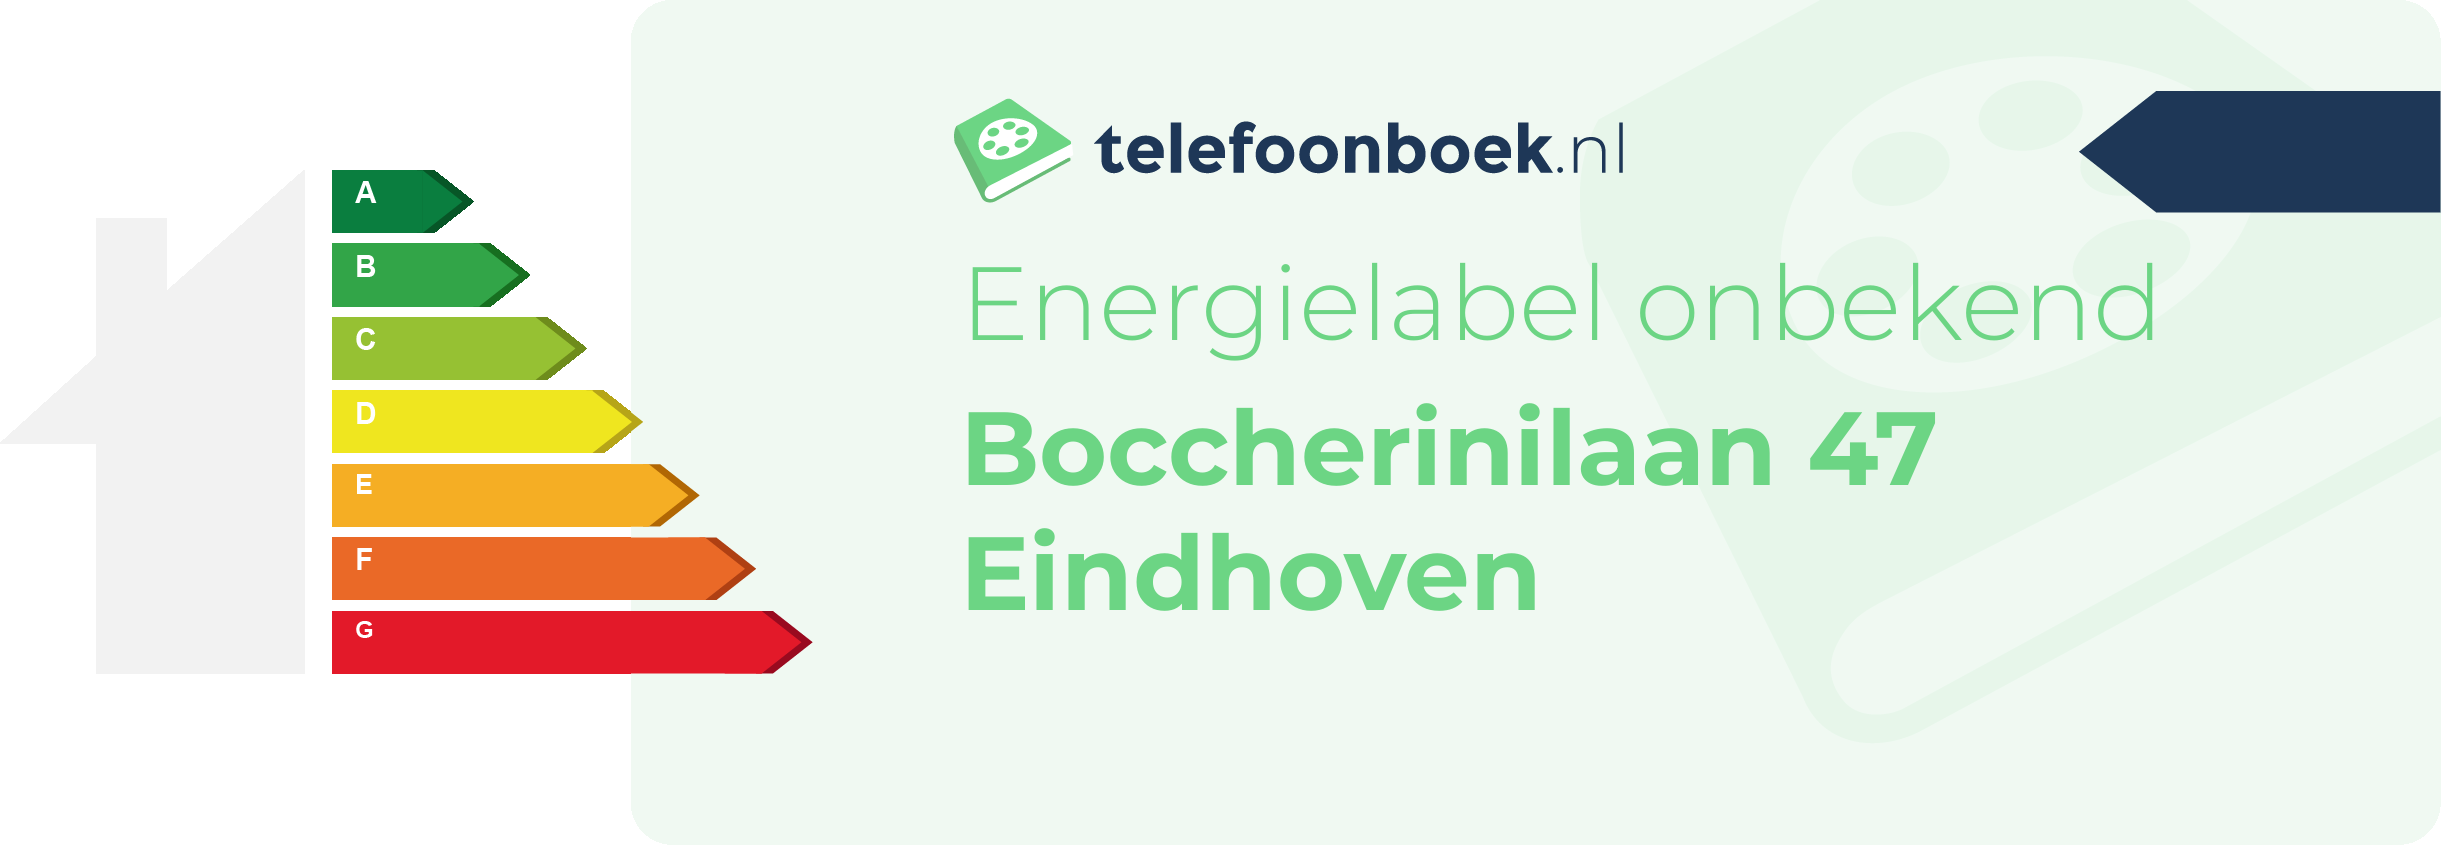 Energielabel Boccherinilaan 47 Eindhoven